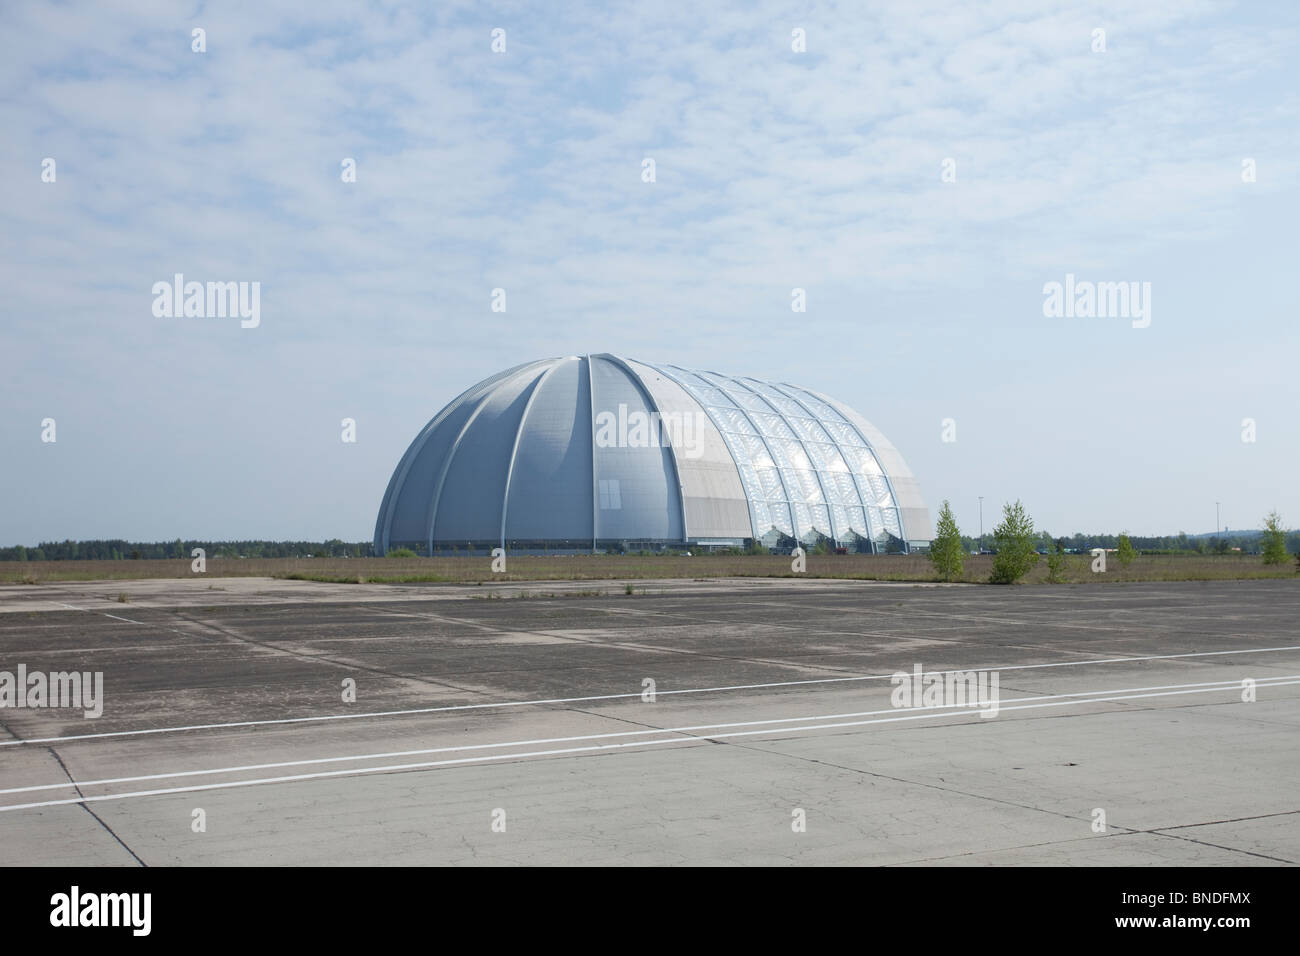 Ampia vista dell'ex hangar dirigibile Zeppelin, ora una massiccia struttura a cupola sotto un cielo blu, in un aeroporto abbandonato in Germania. Foto Stock